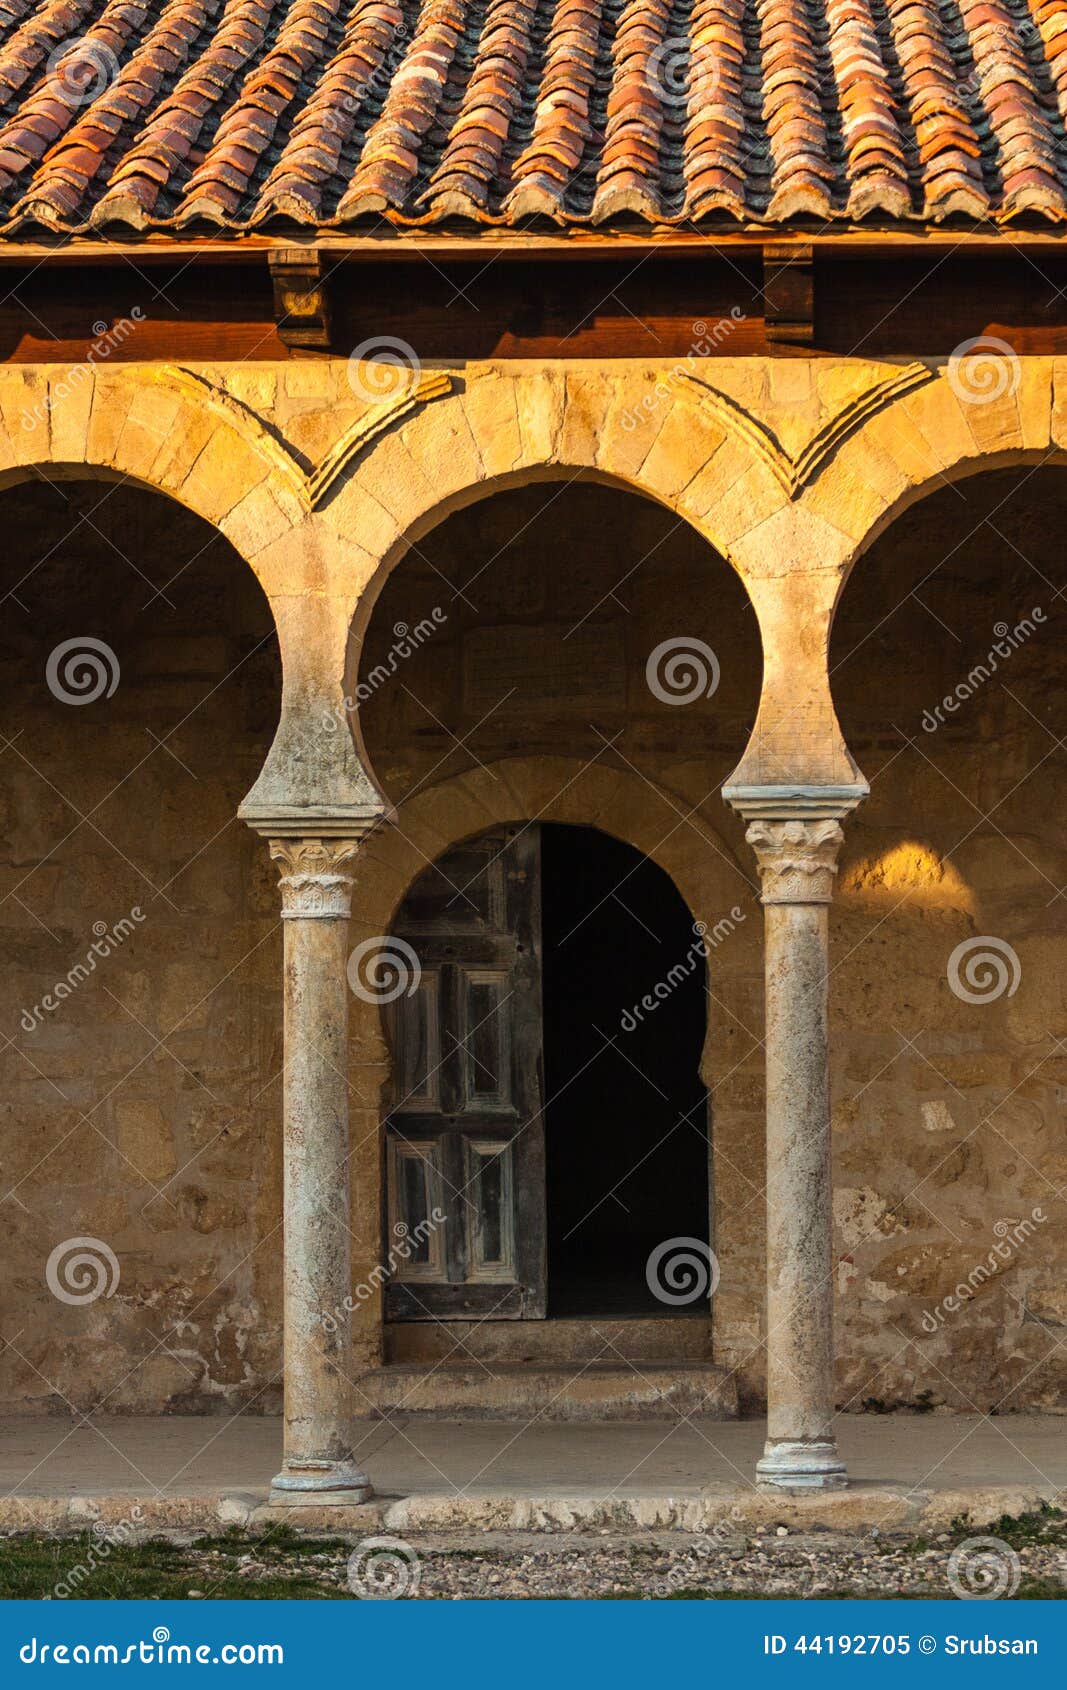 beautiful mozarabic archs in church entrance